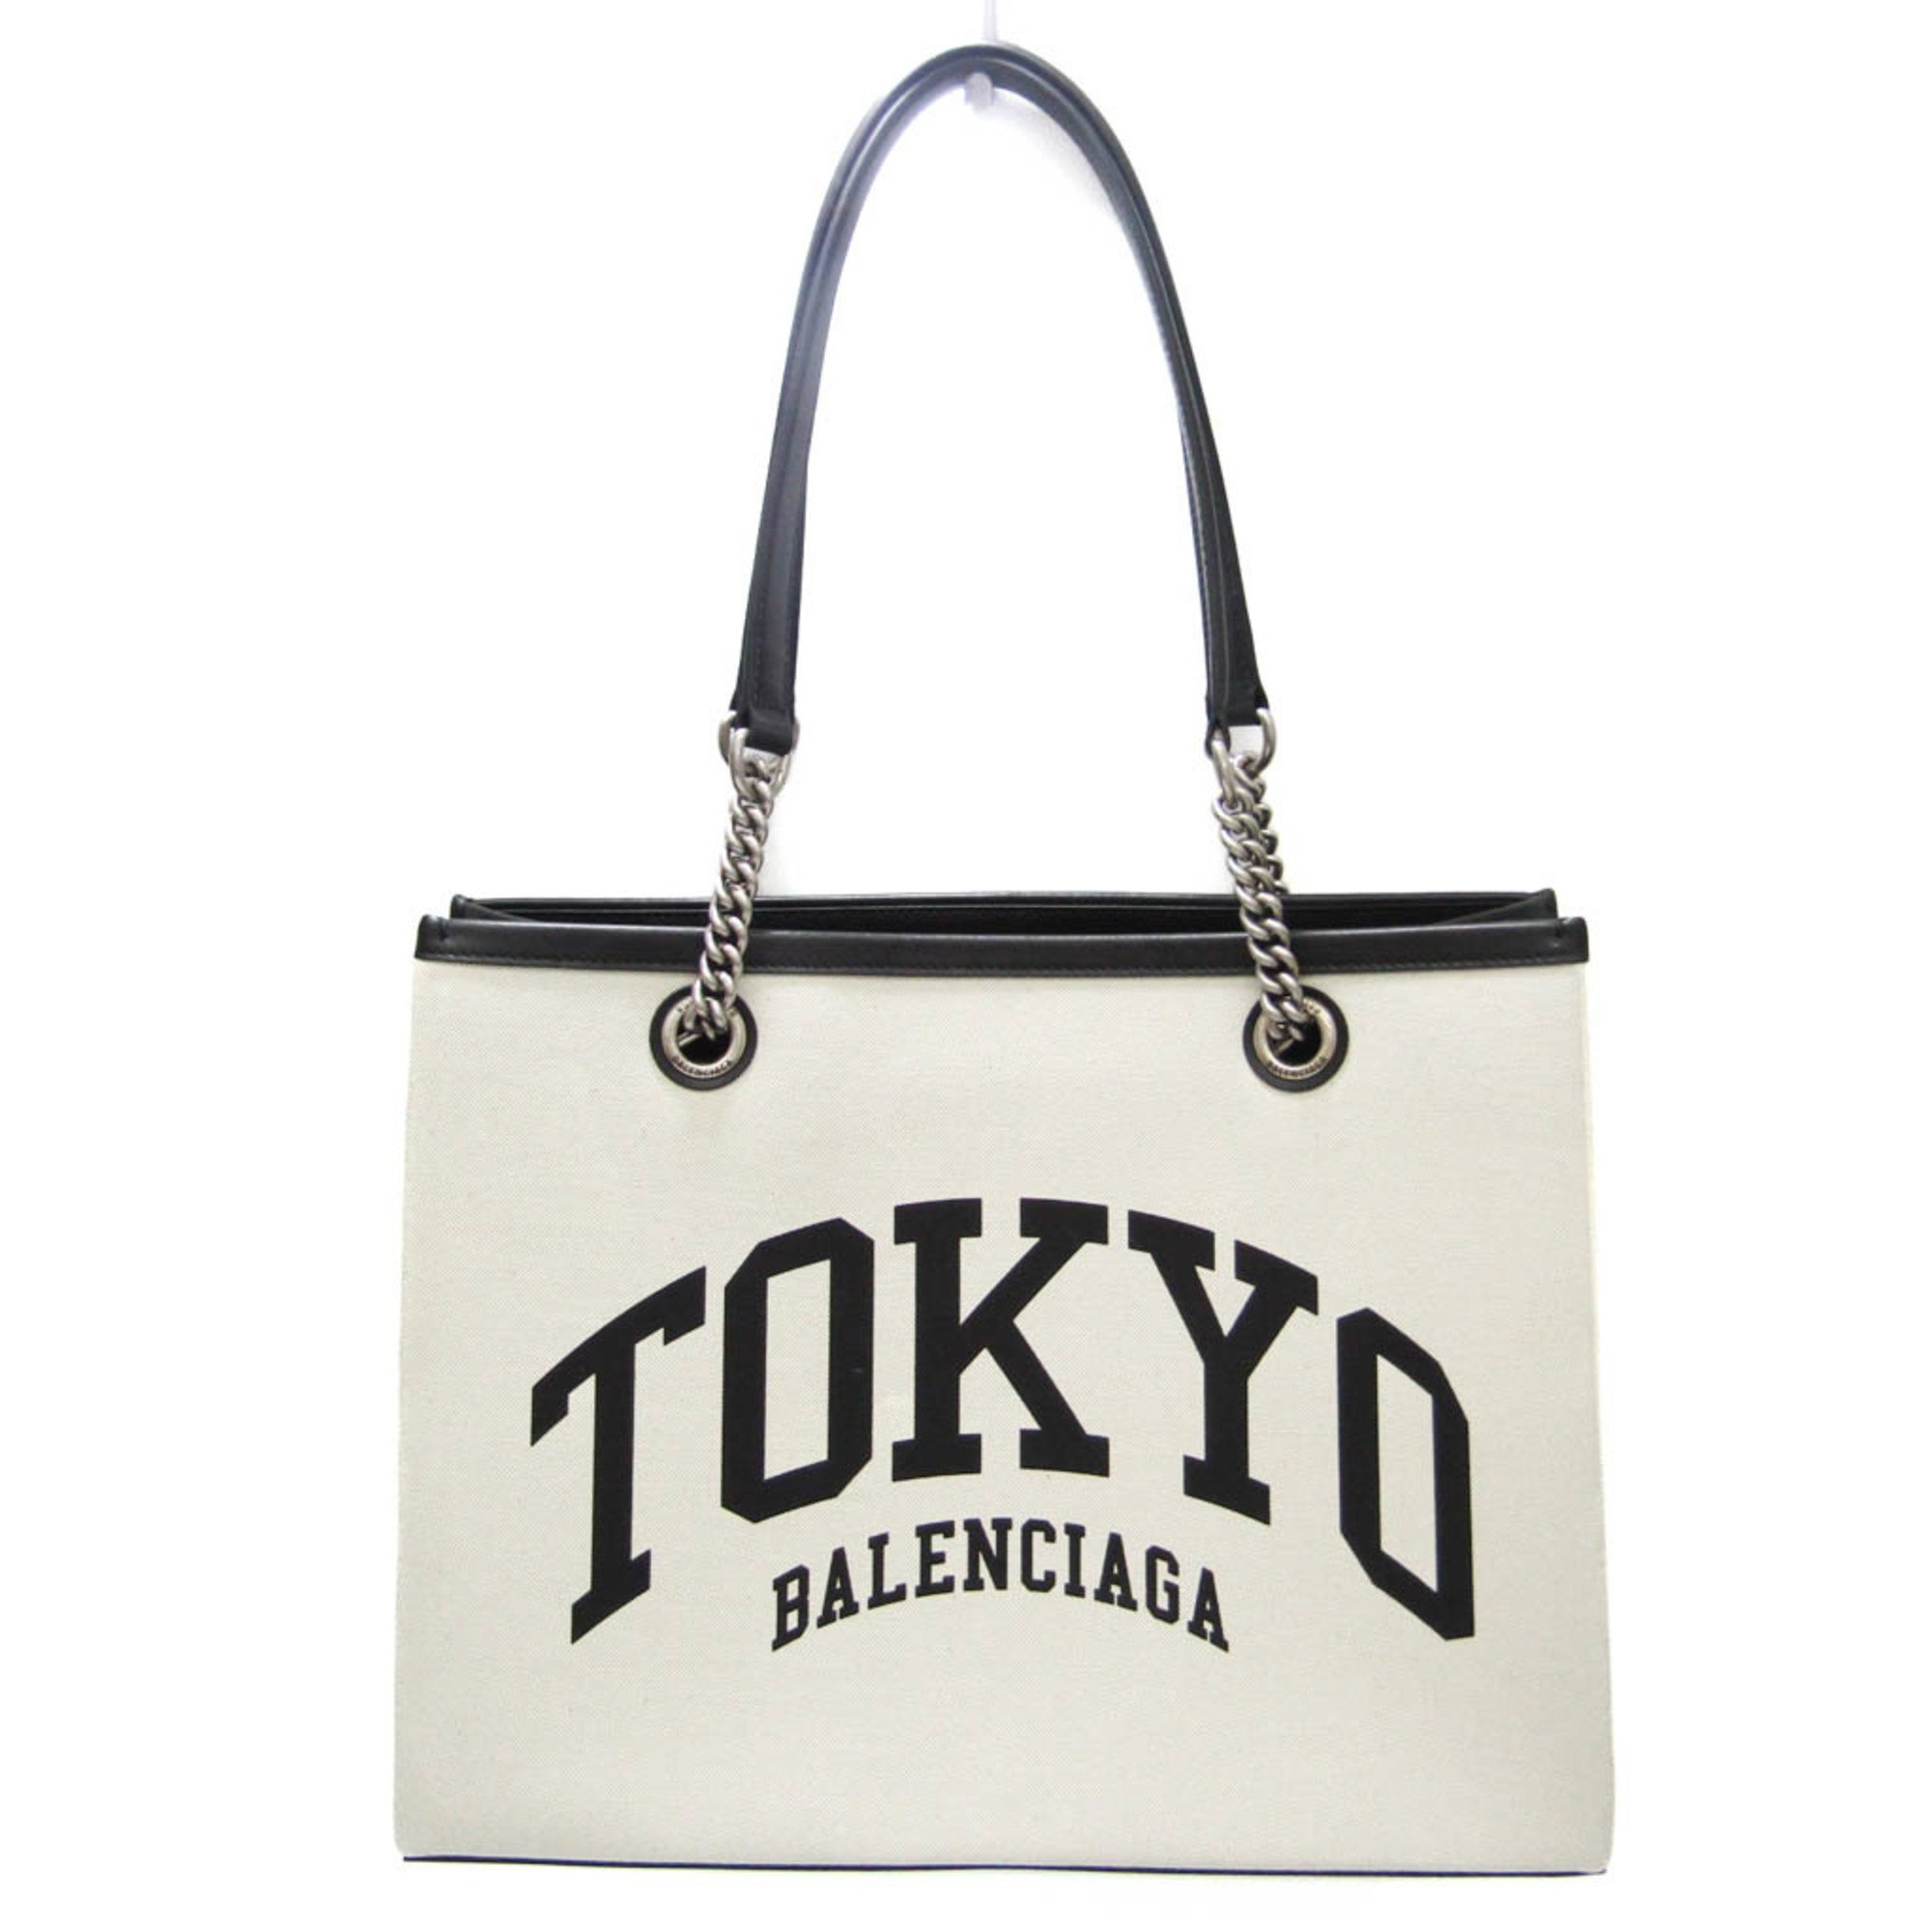 バレンシアガ(Balenciaga) TOKYO Duty Free Shopping Bag 759941